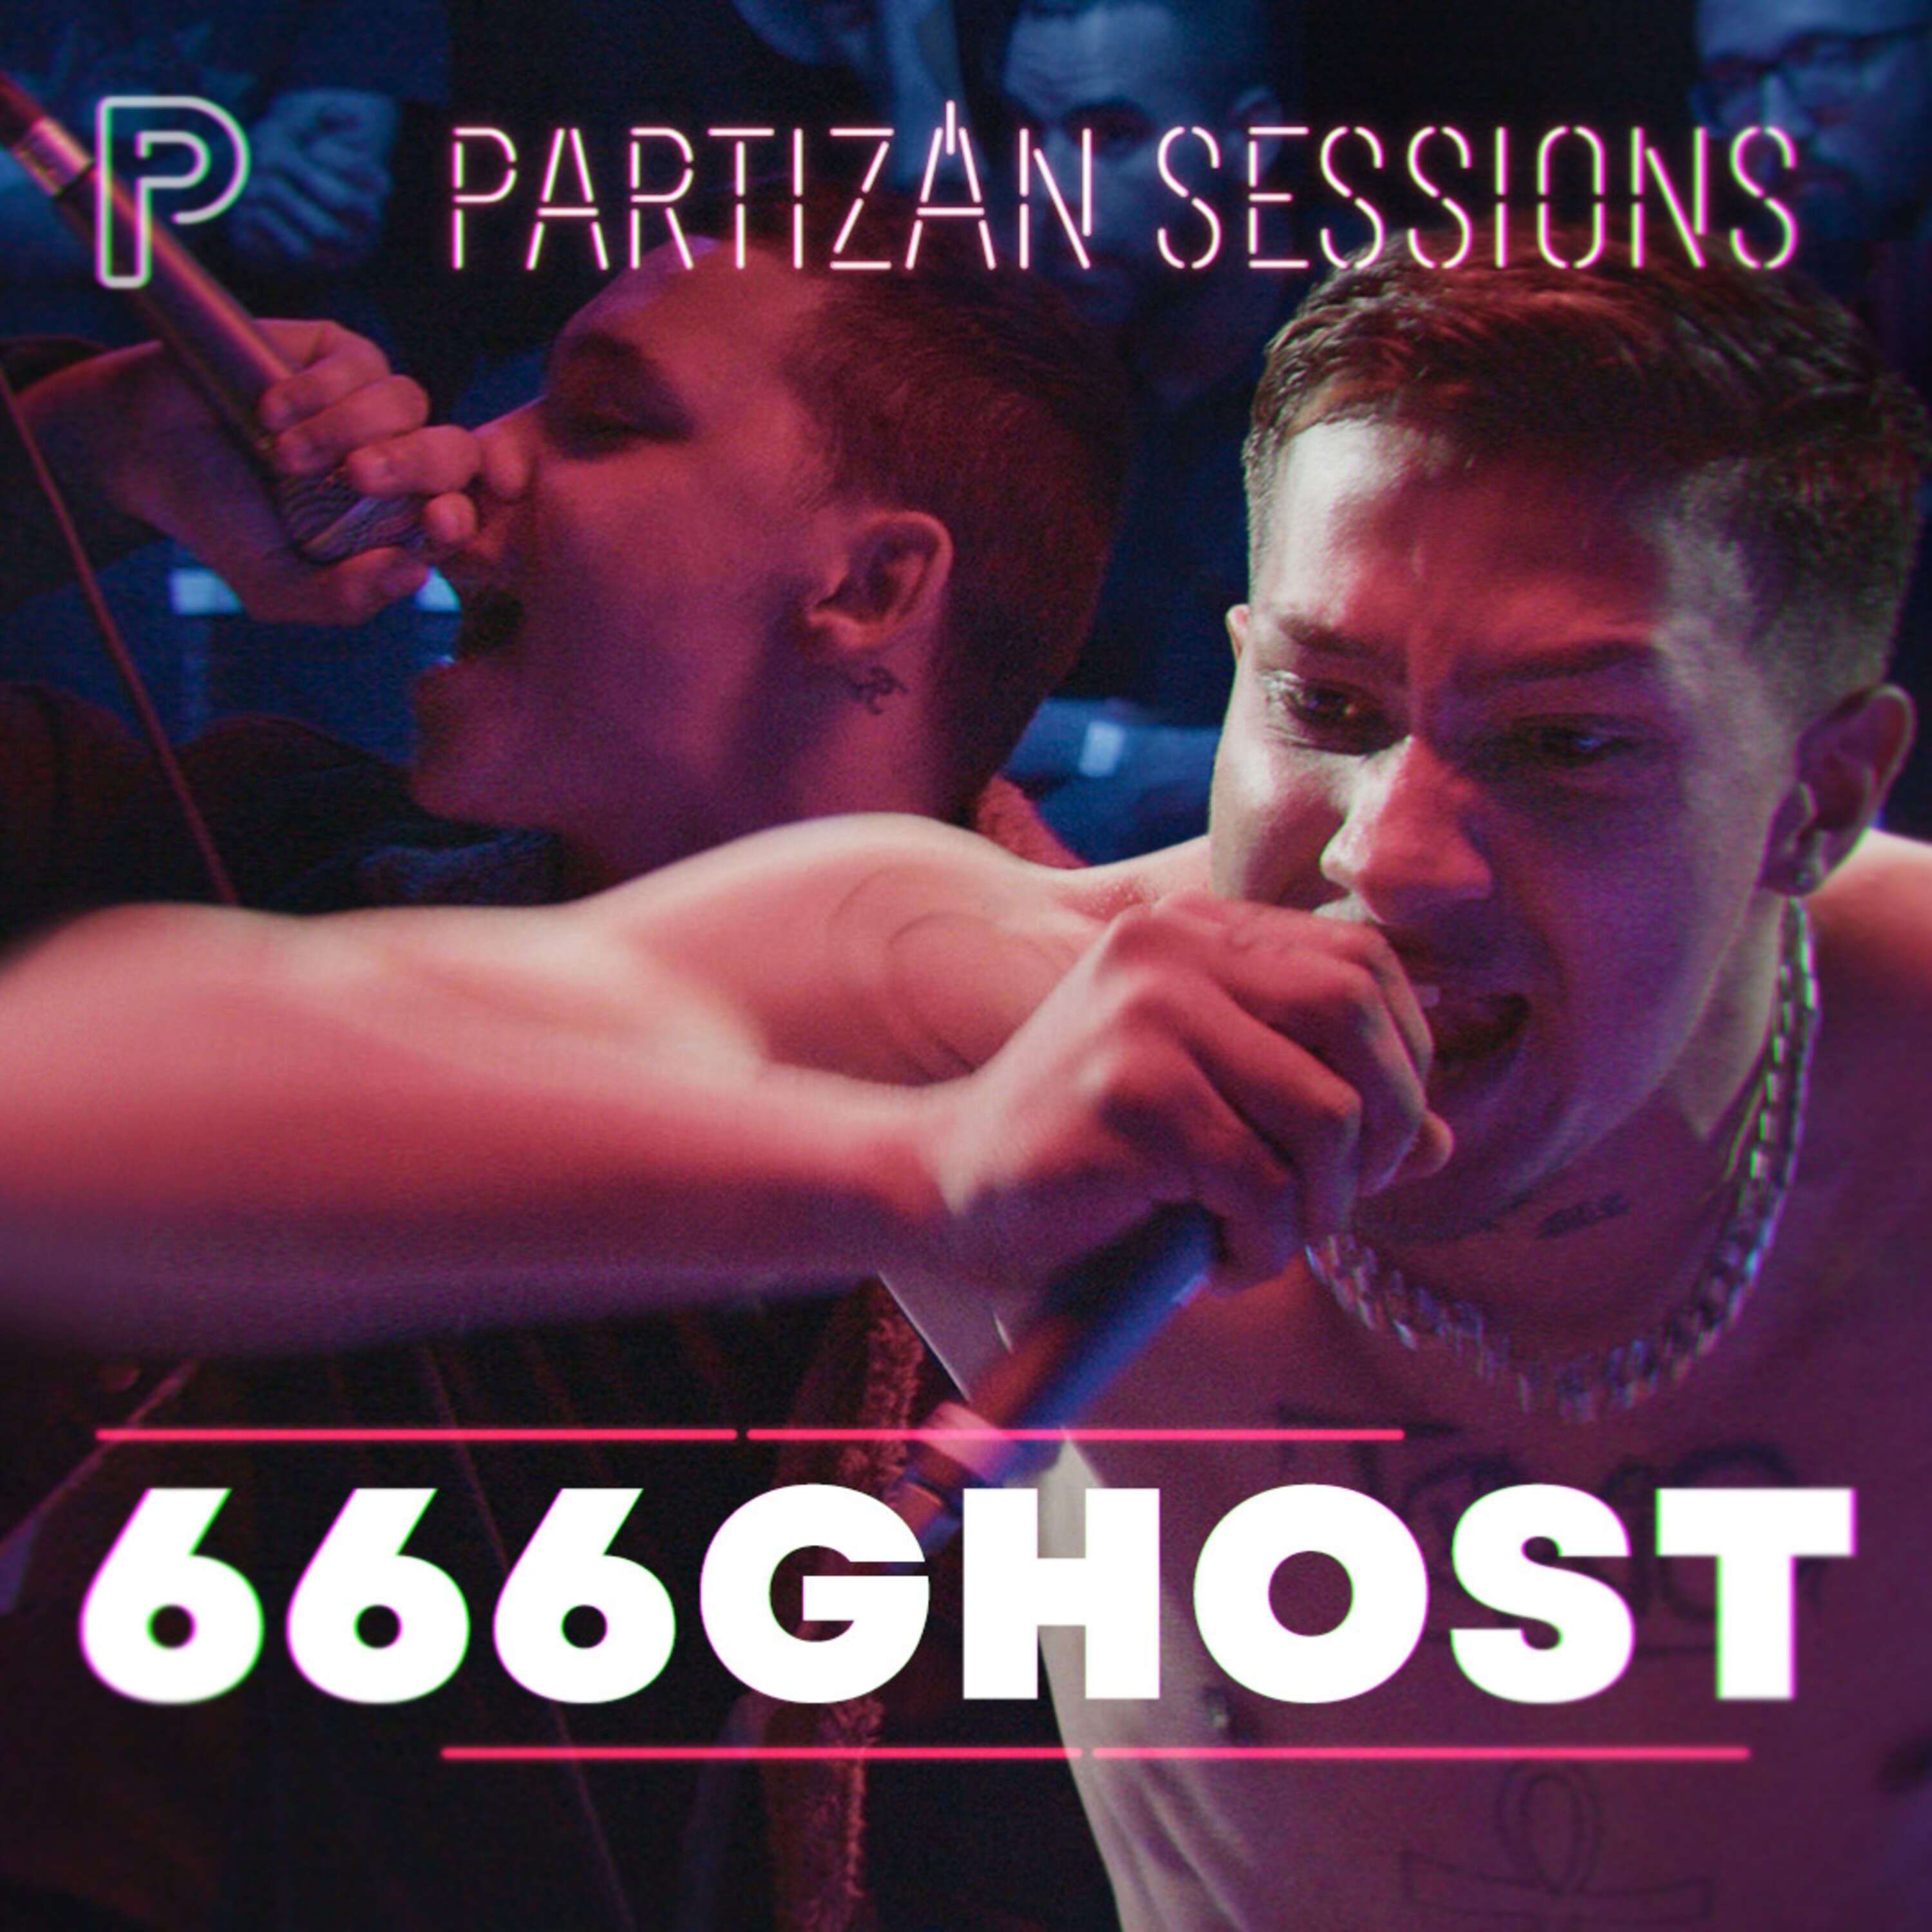 666GHOST - Nagyon real (Ég a flow) | Partizán Sessions